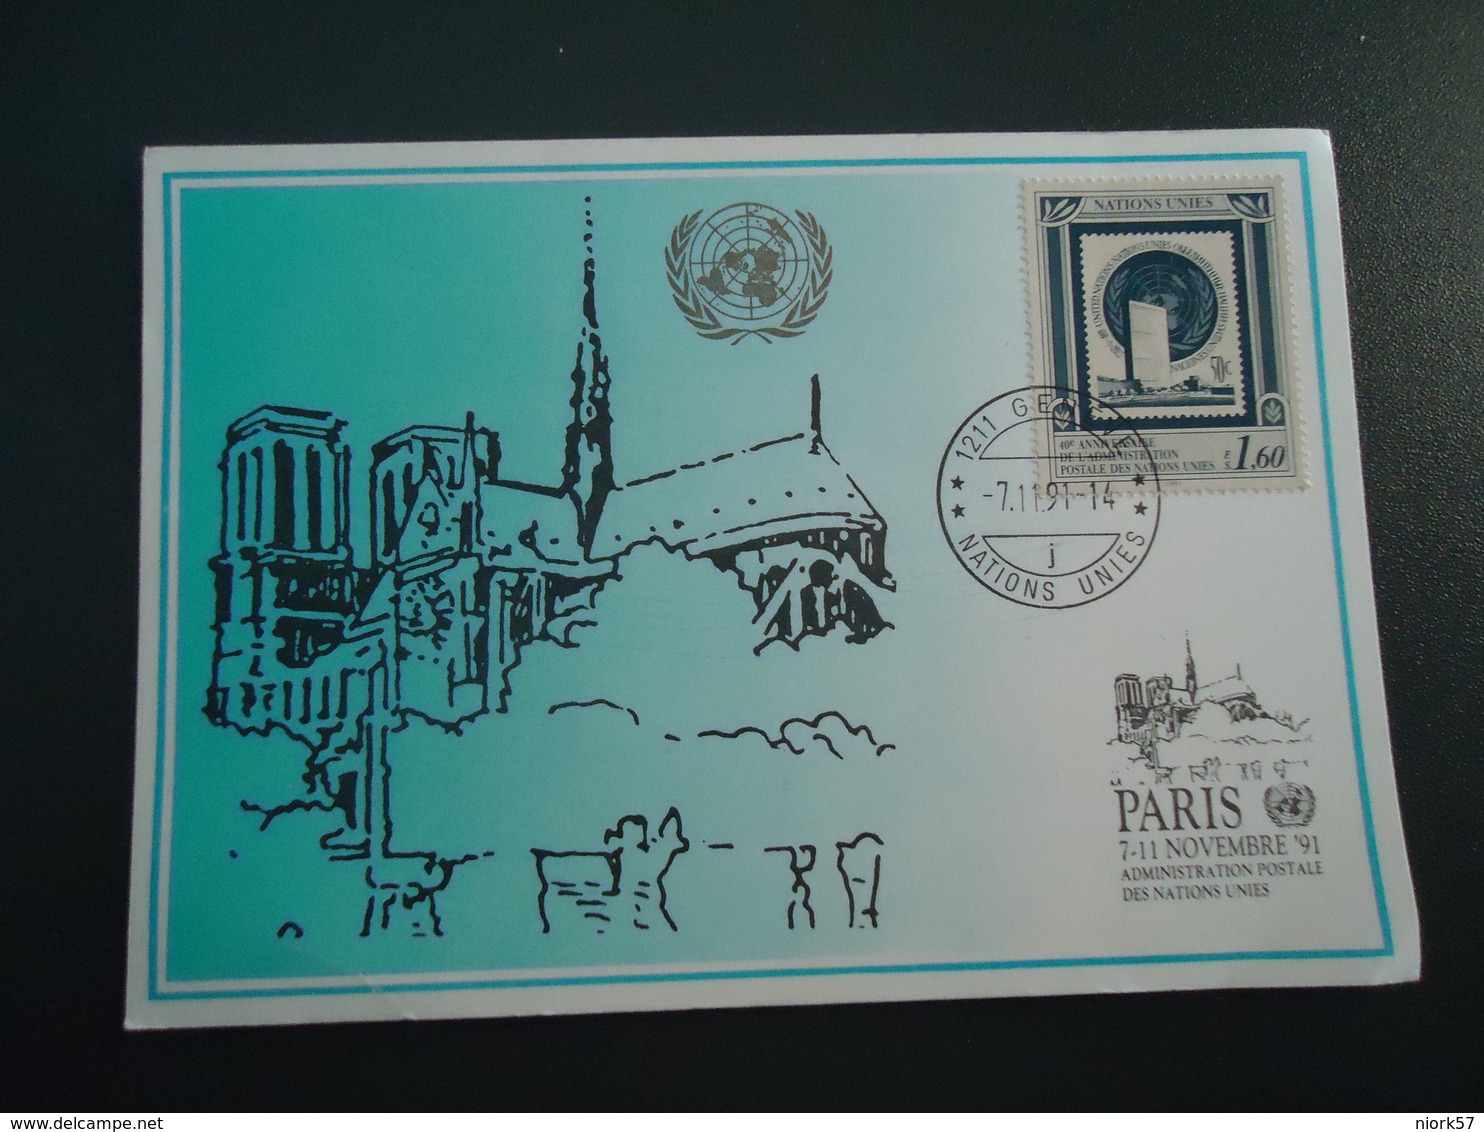 UNITED NATIONS  MAXIMUM CARDS  PARIS 91 - Cartes-maximum